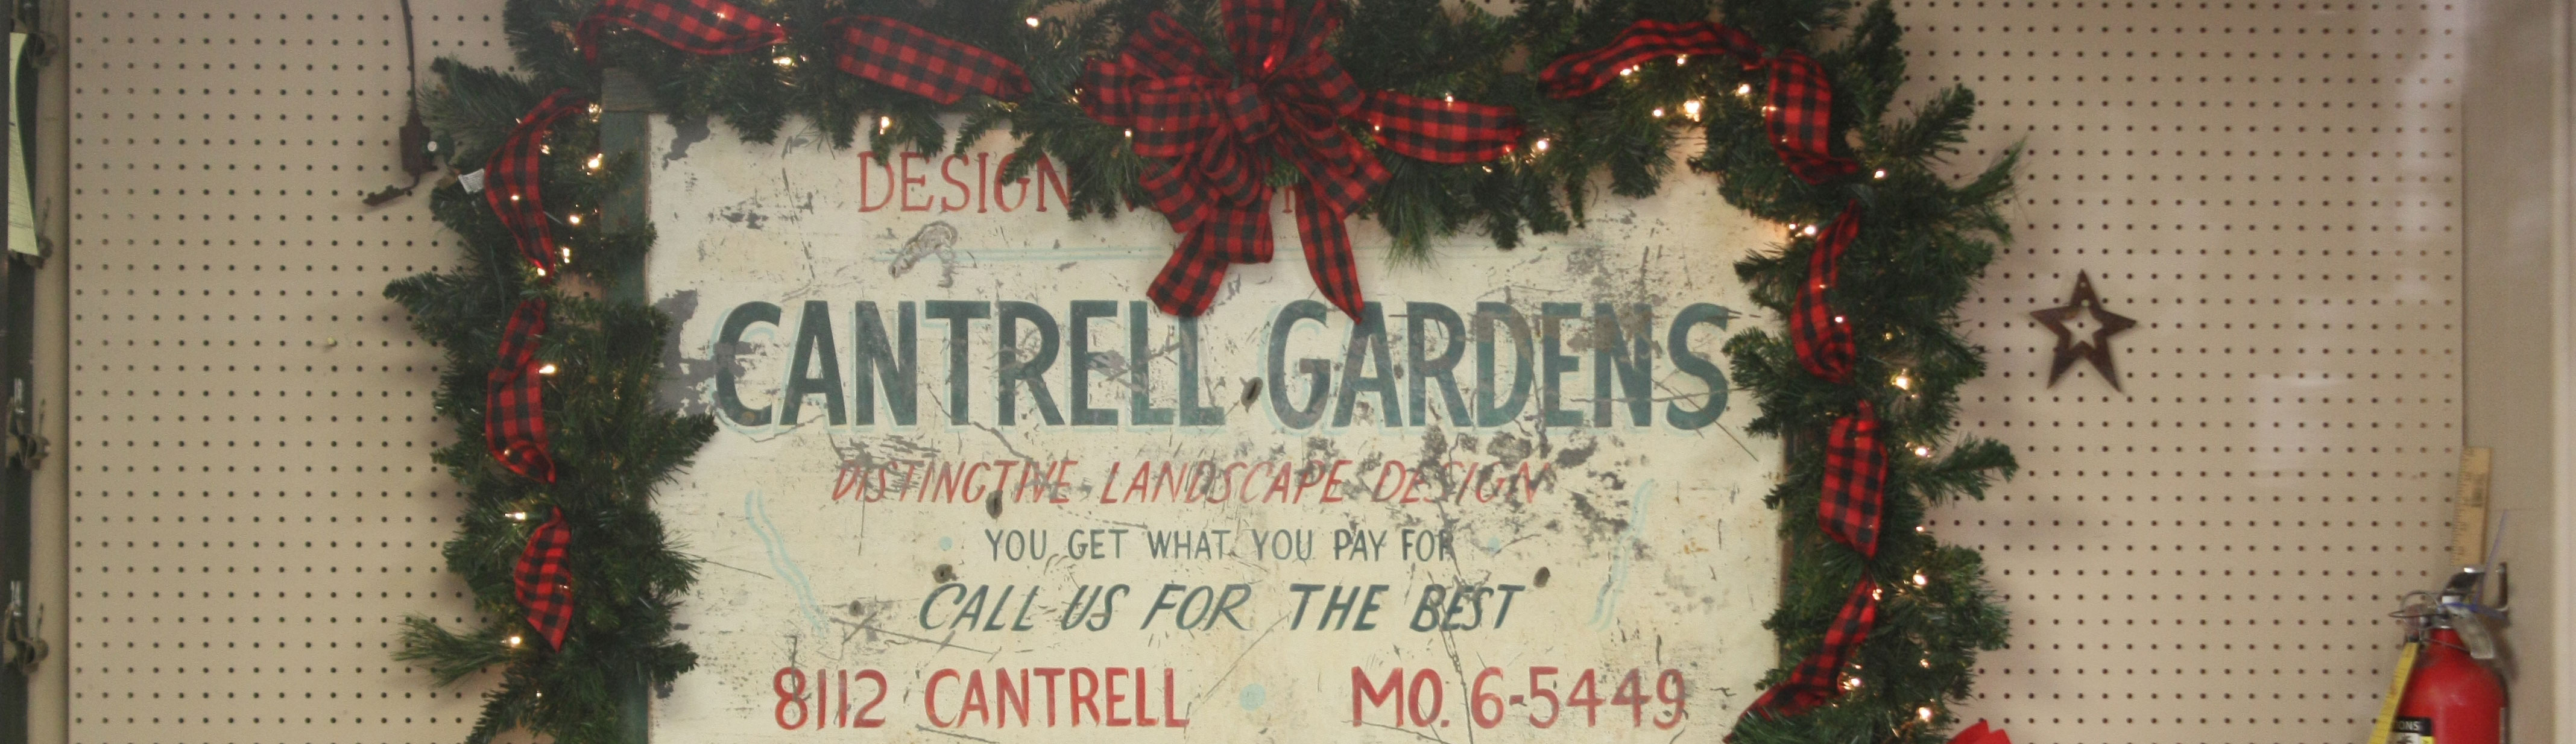 Cantrell Gardens Sign